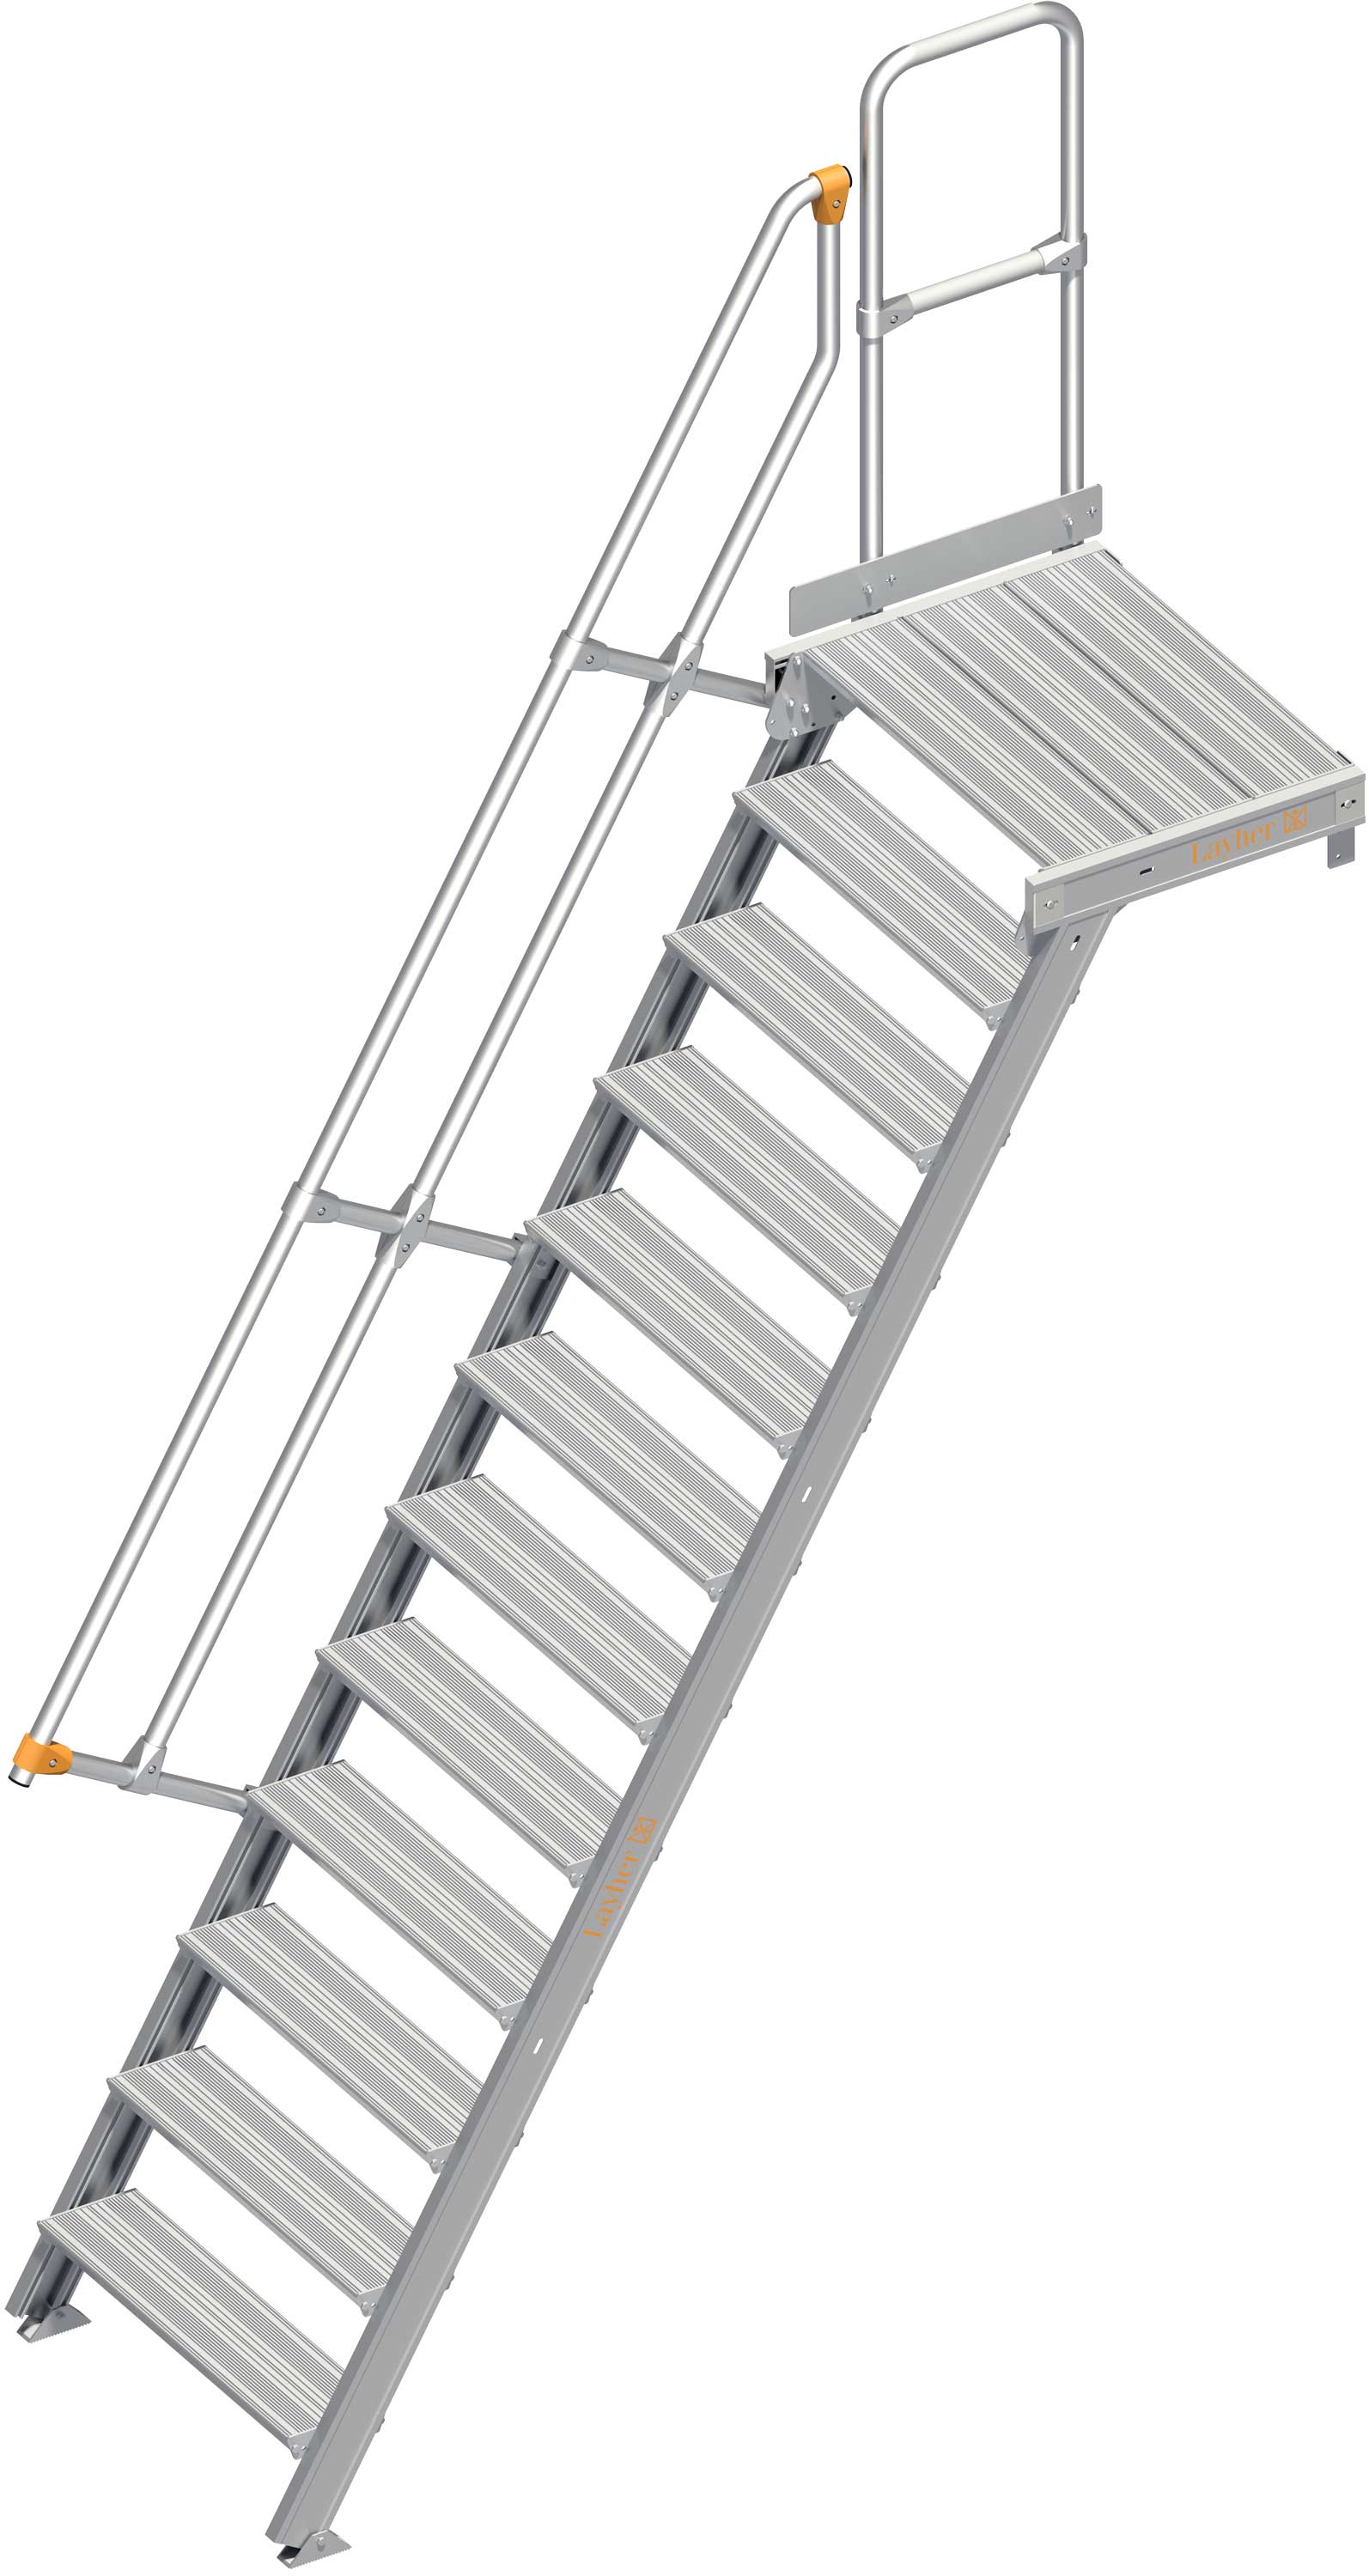 Layher Plattformtreppe 60° 12 Stufen - 800 mm breit